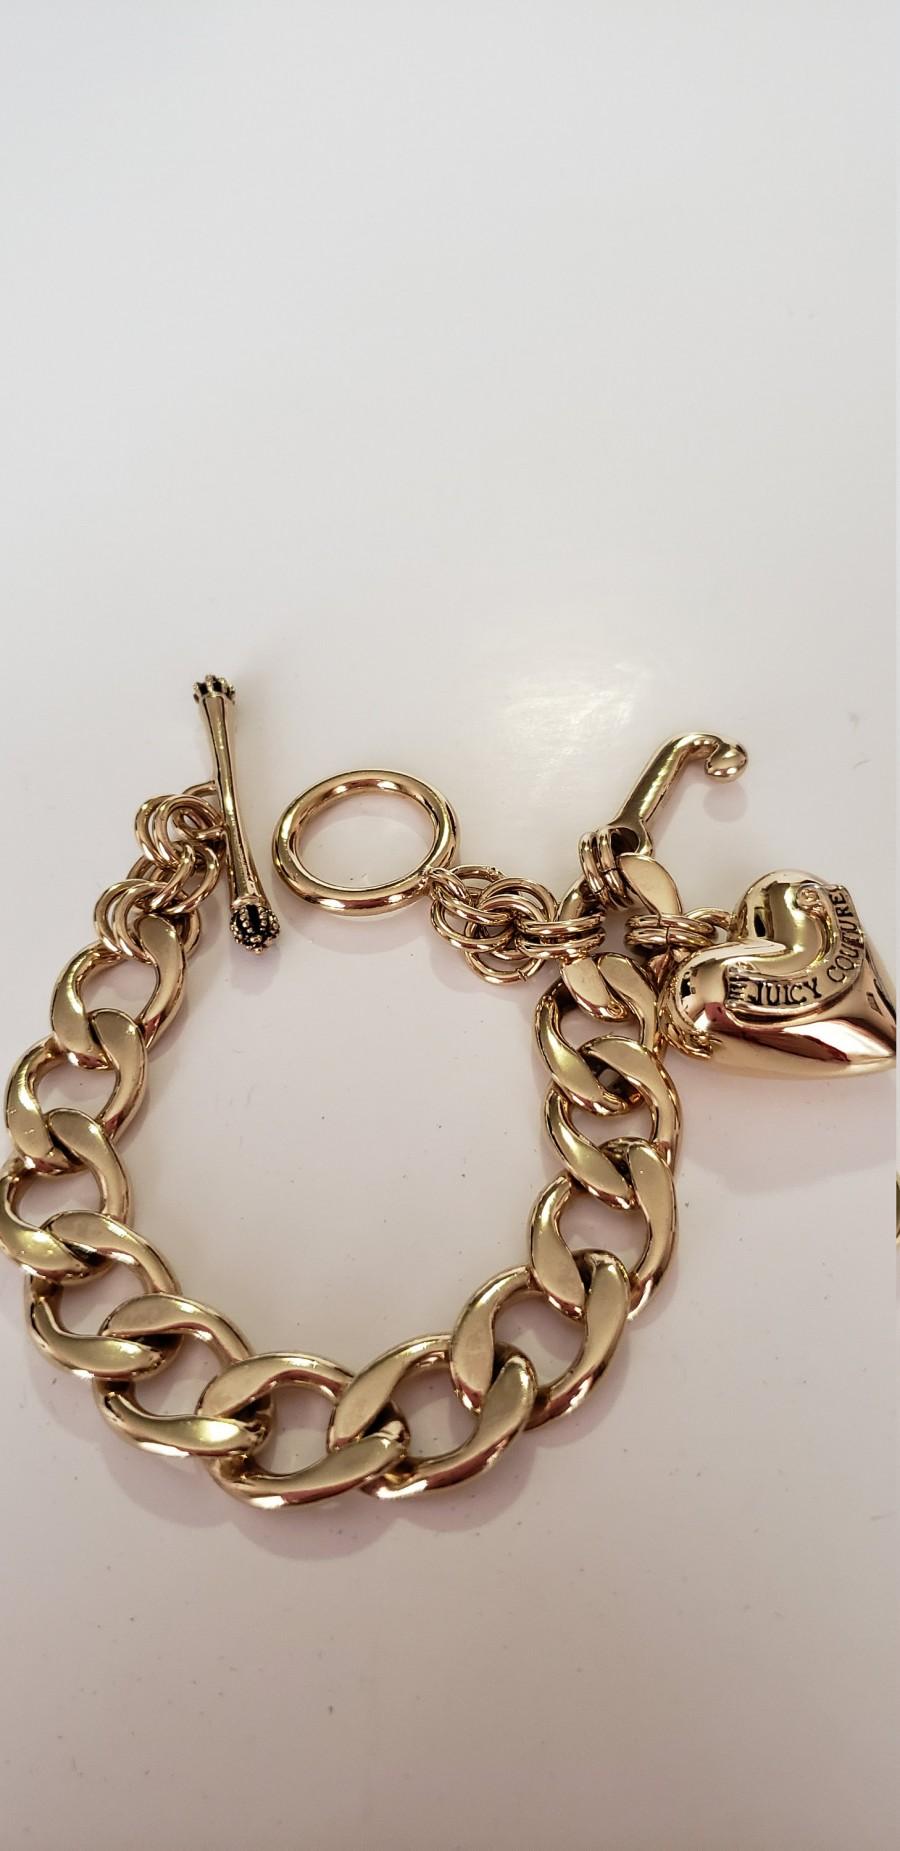 Hochzeit - Juicy Couture Bracelet.Charm Bracelet.Gold Ton Bracelet.Vintage Charm Bracelet.JC Bracelet.